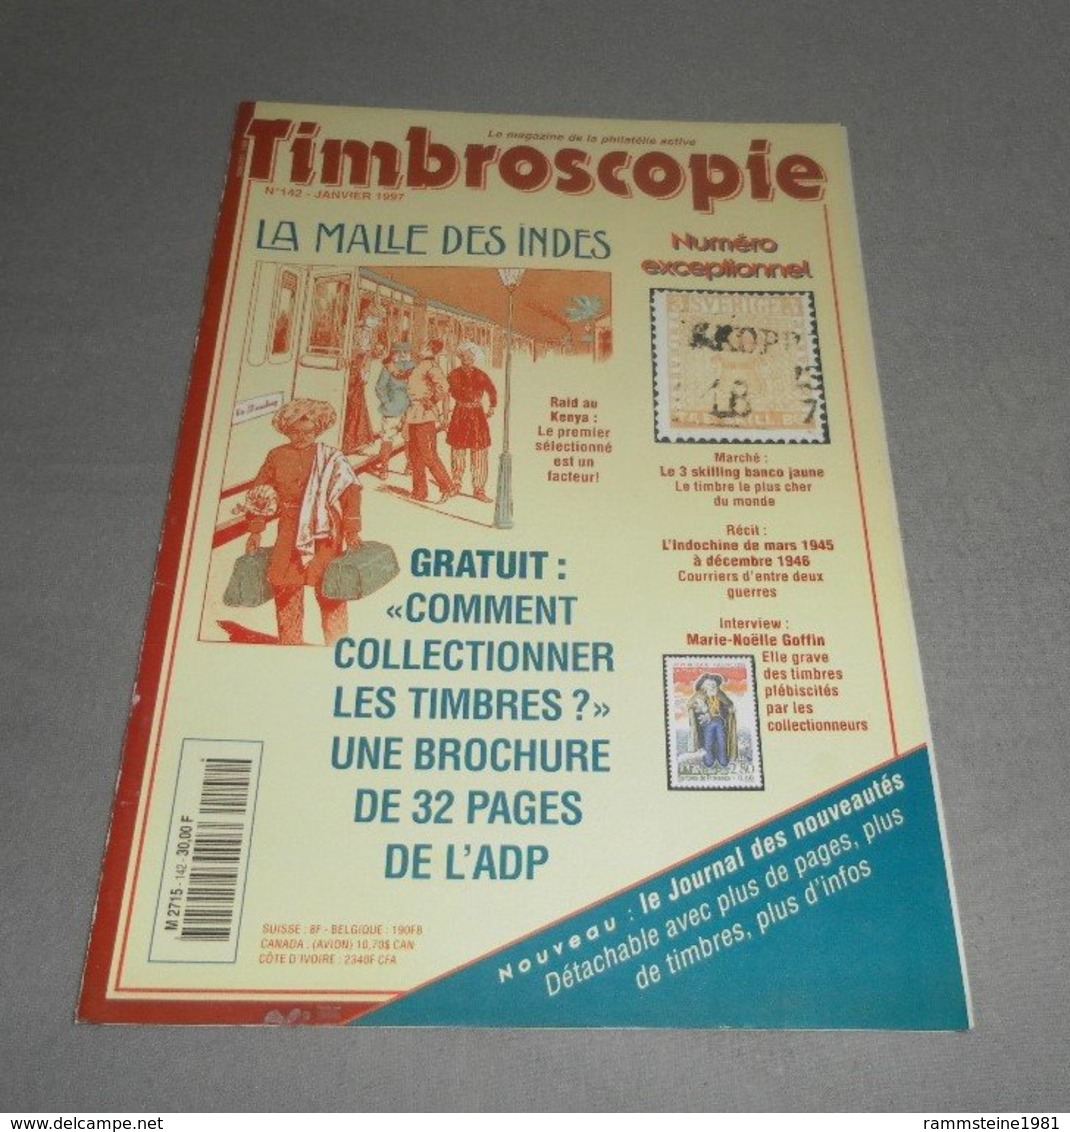 Timbroscopie Janvier 1997 N° 142 - Français (àpd. 1941)